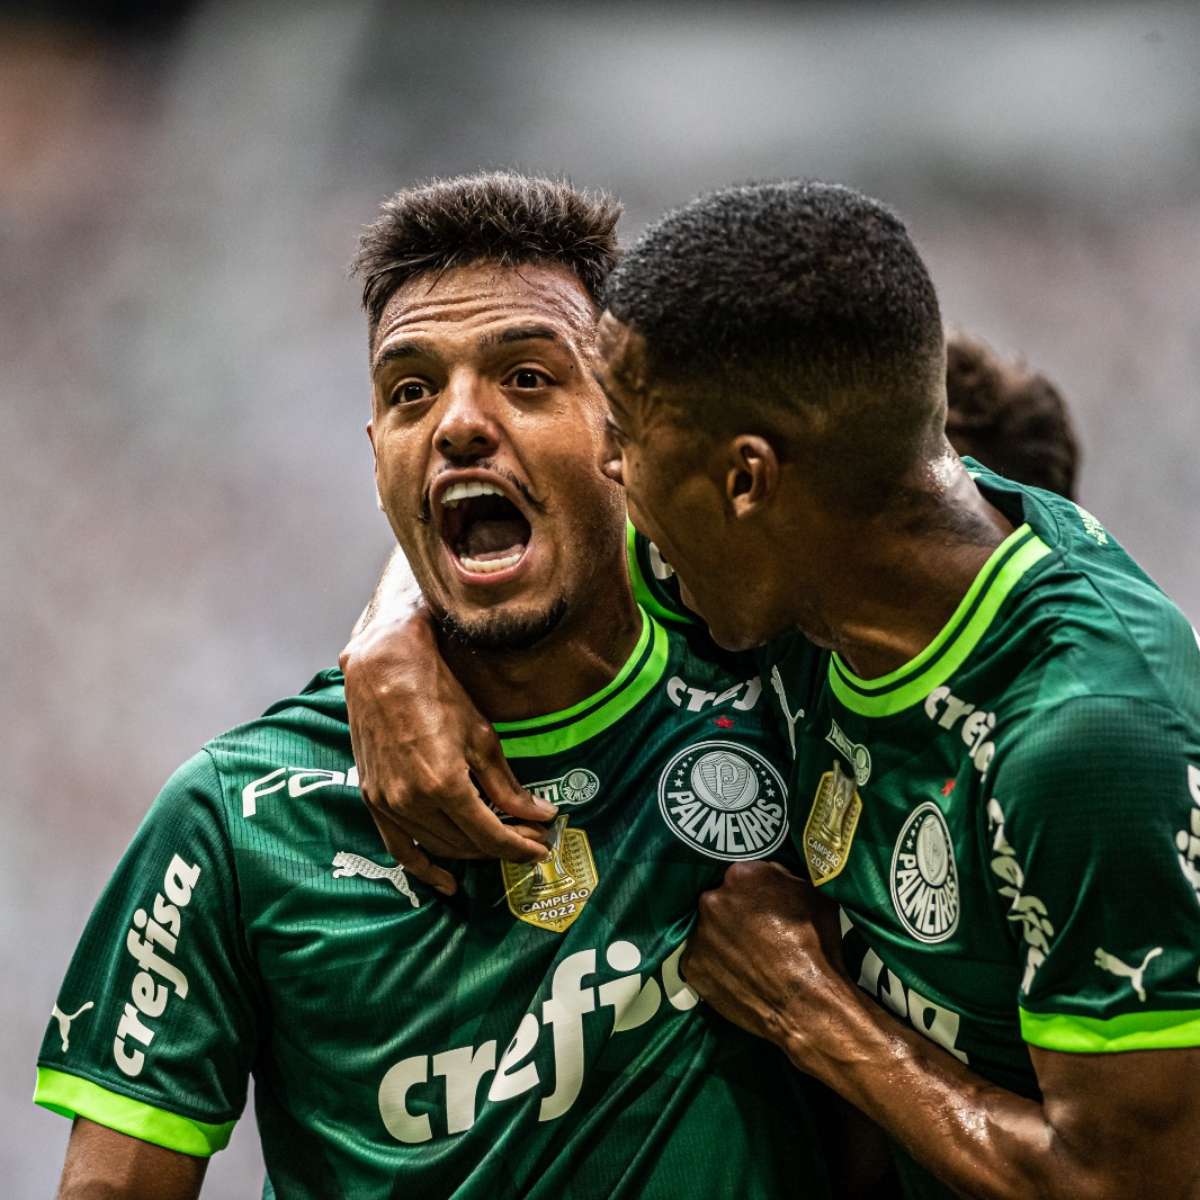 São José conquista primeira vitória na Copa Paulista de Futebol